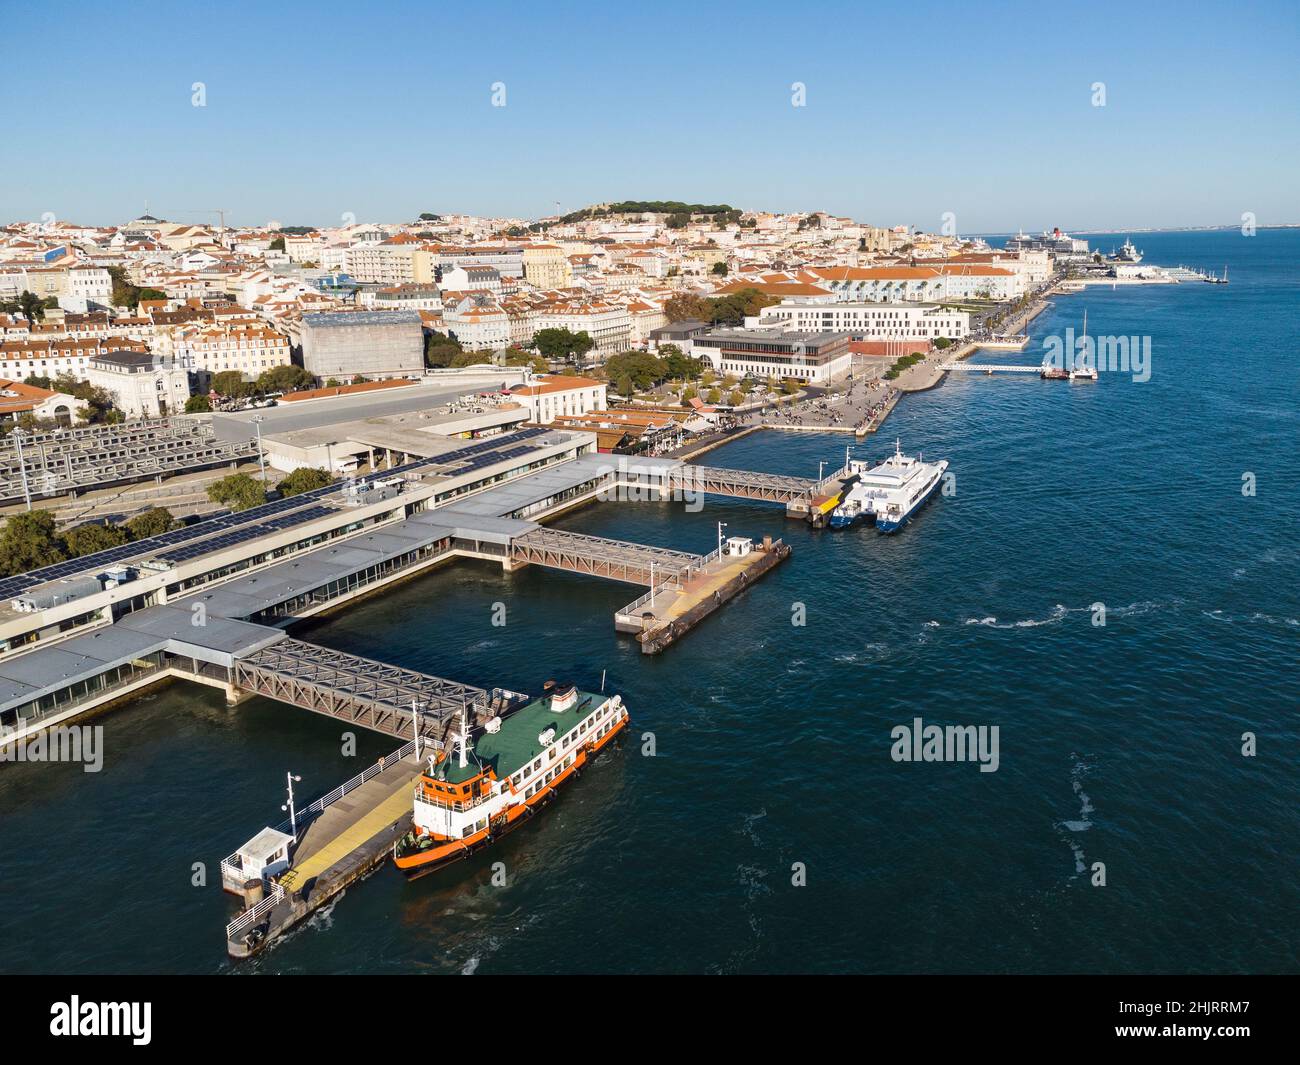 Luftaufnahme des Fährenterminals Cais do Sodre am Fluss Tage in Lissabon, der Hauptstadt Portugals Stockfoto